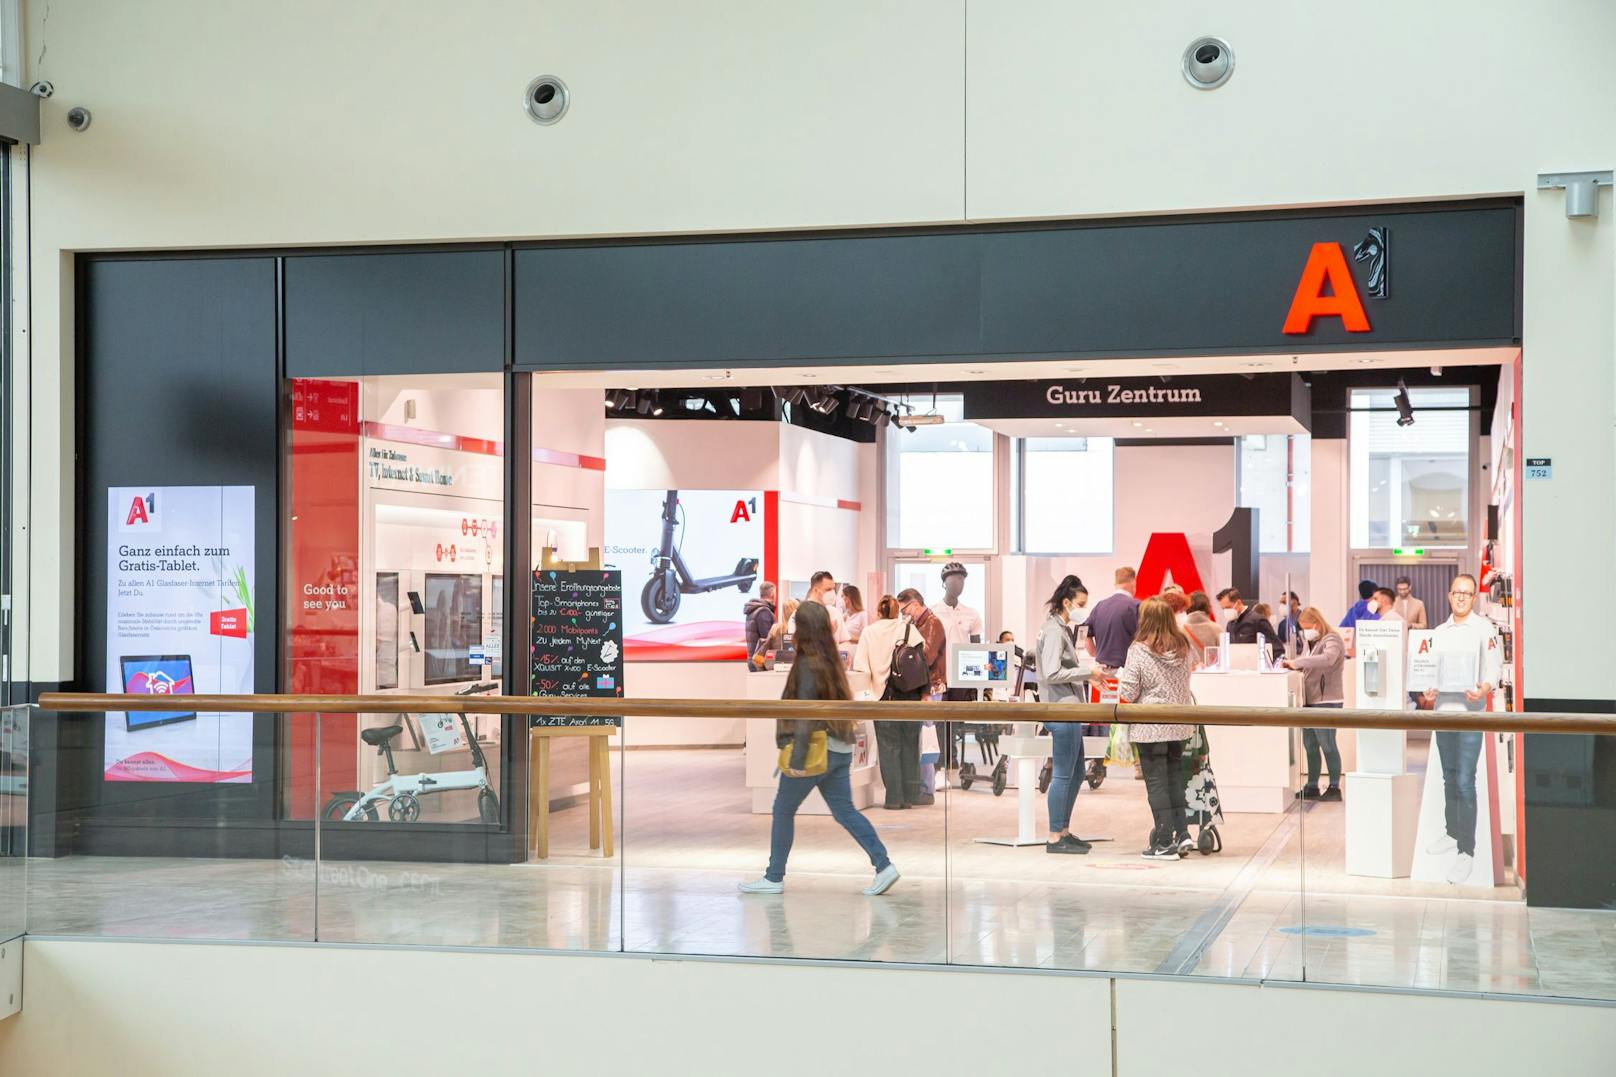 A1 eröffnet Österreichs größtes Guru Zentrum im neuen A1 Shop im Wiener Donau Zentrum.